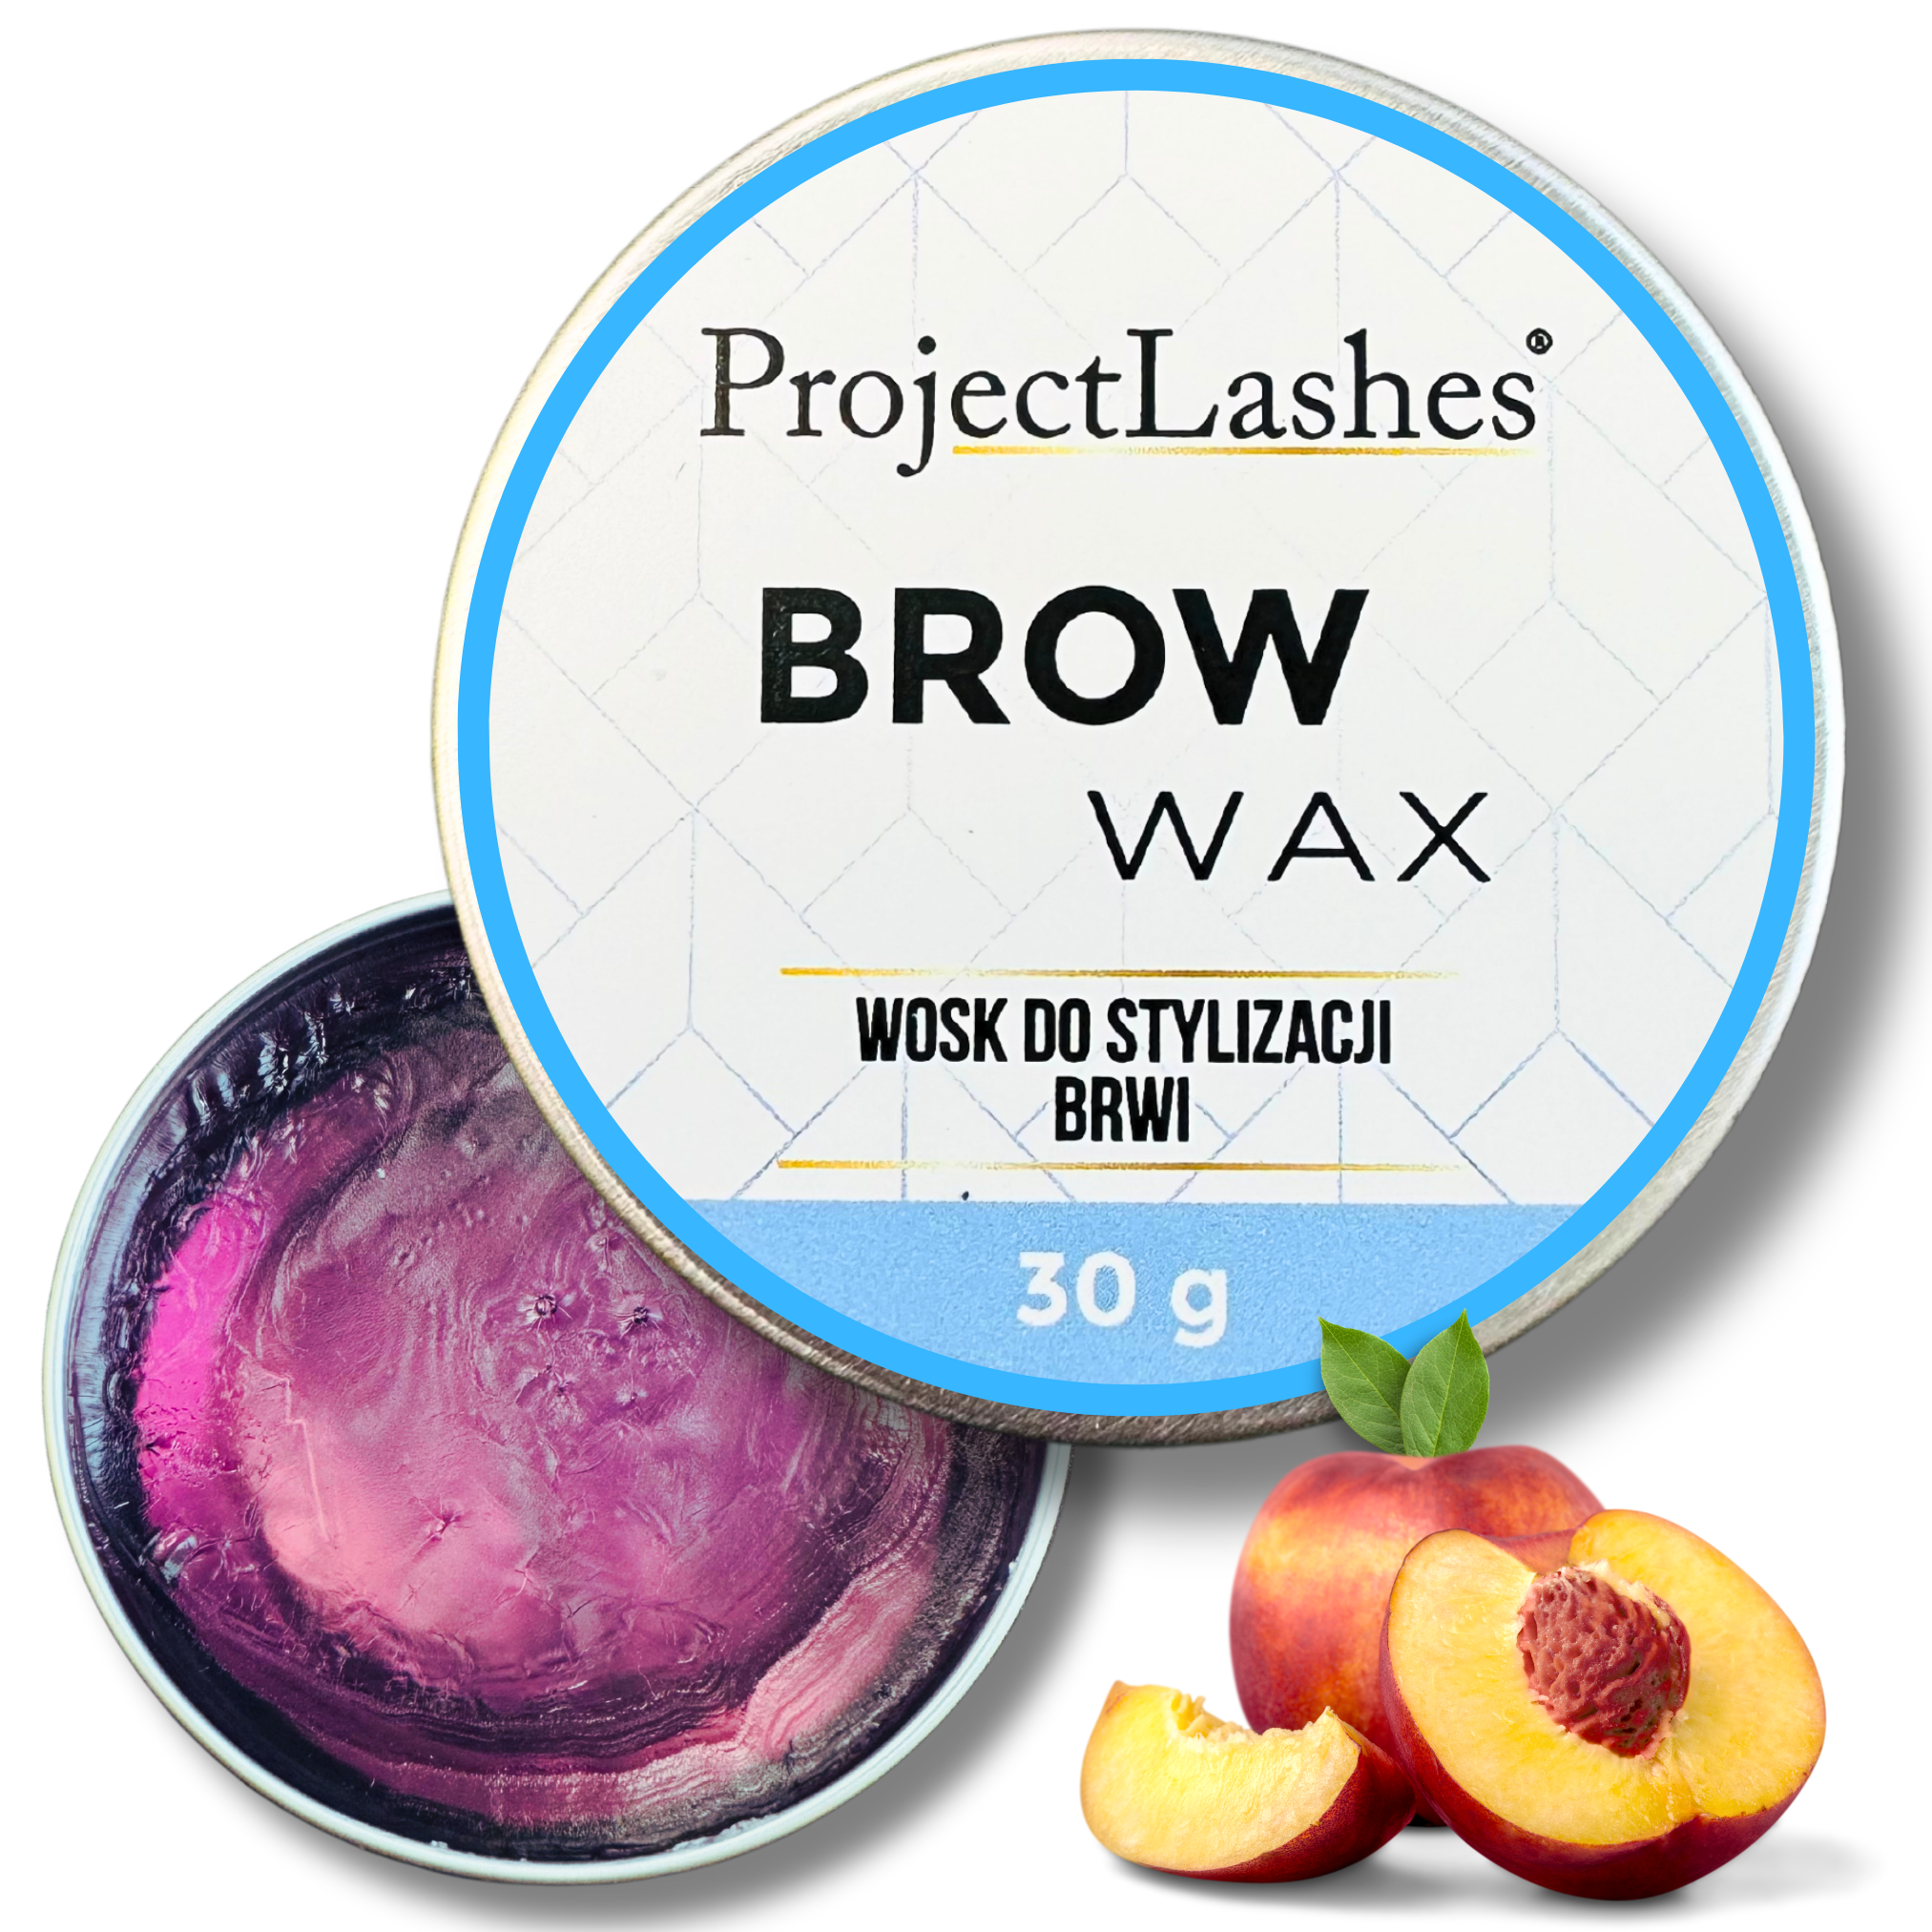 Wosk odżywka do układania stylizacji brwi ProjectLashes Brow Wax 30g PEACH